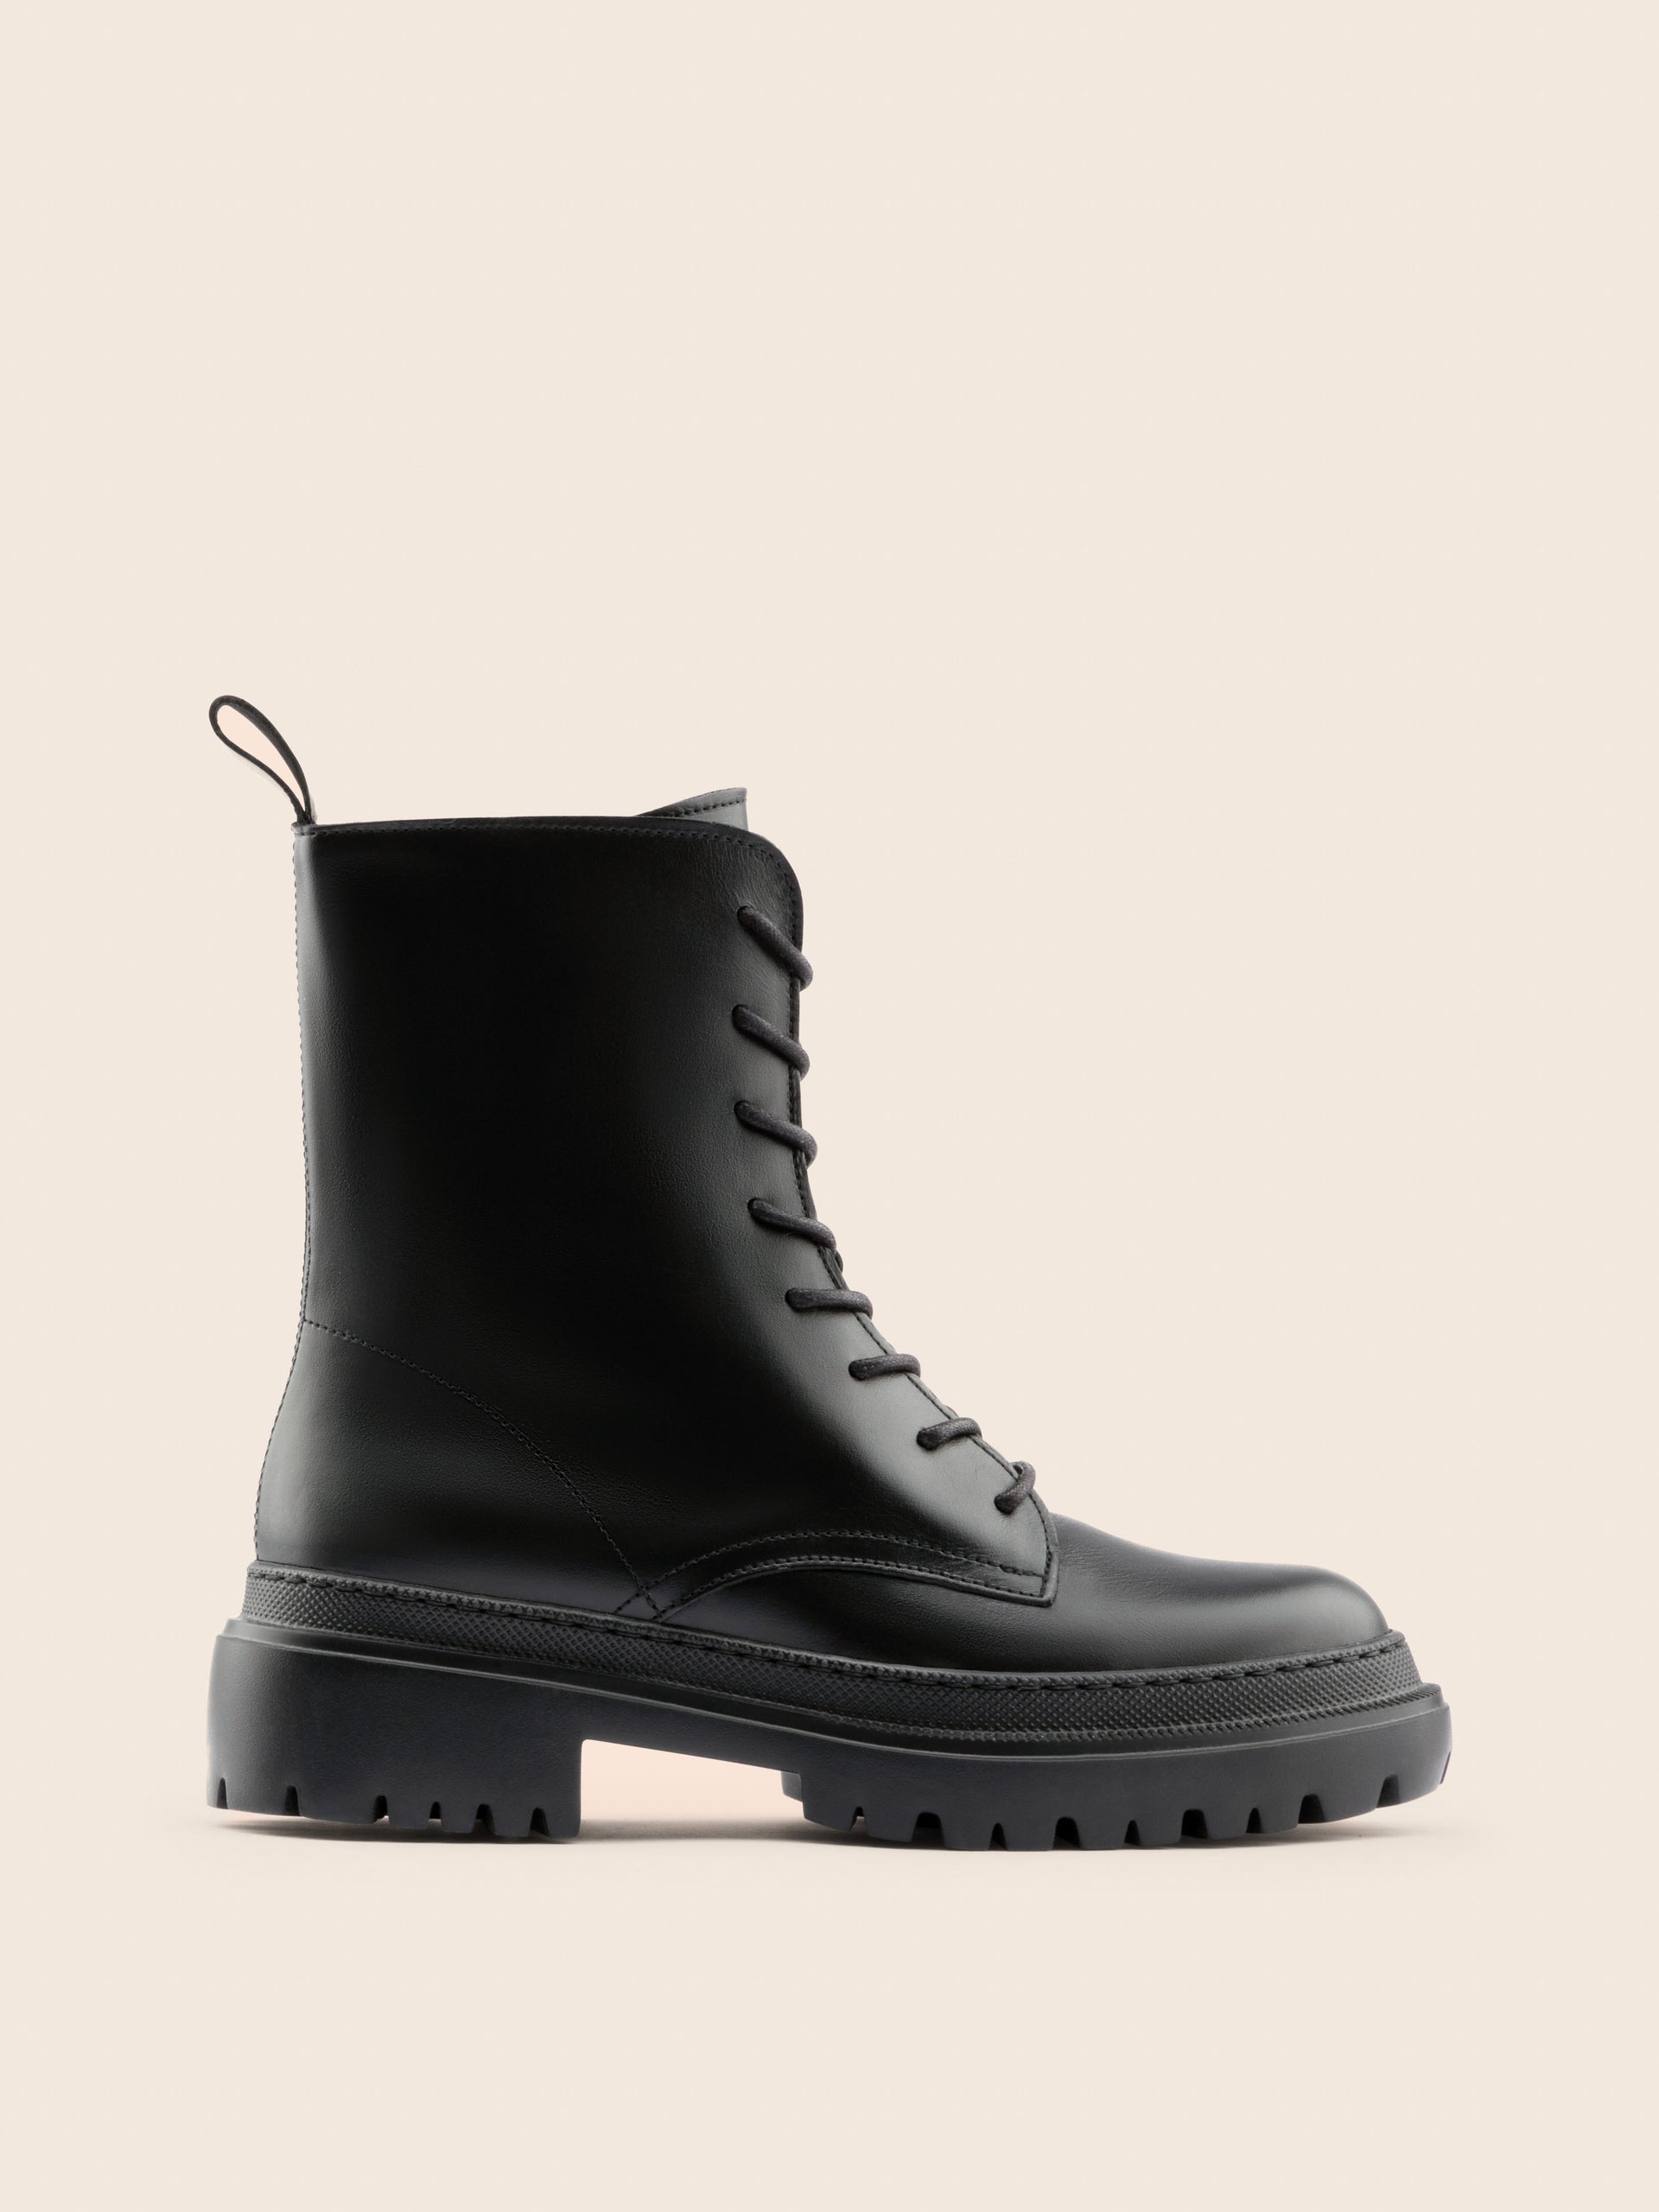 Belluno Black Leather Boot